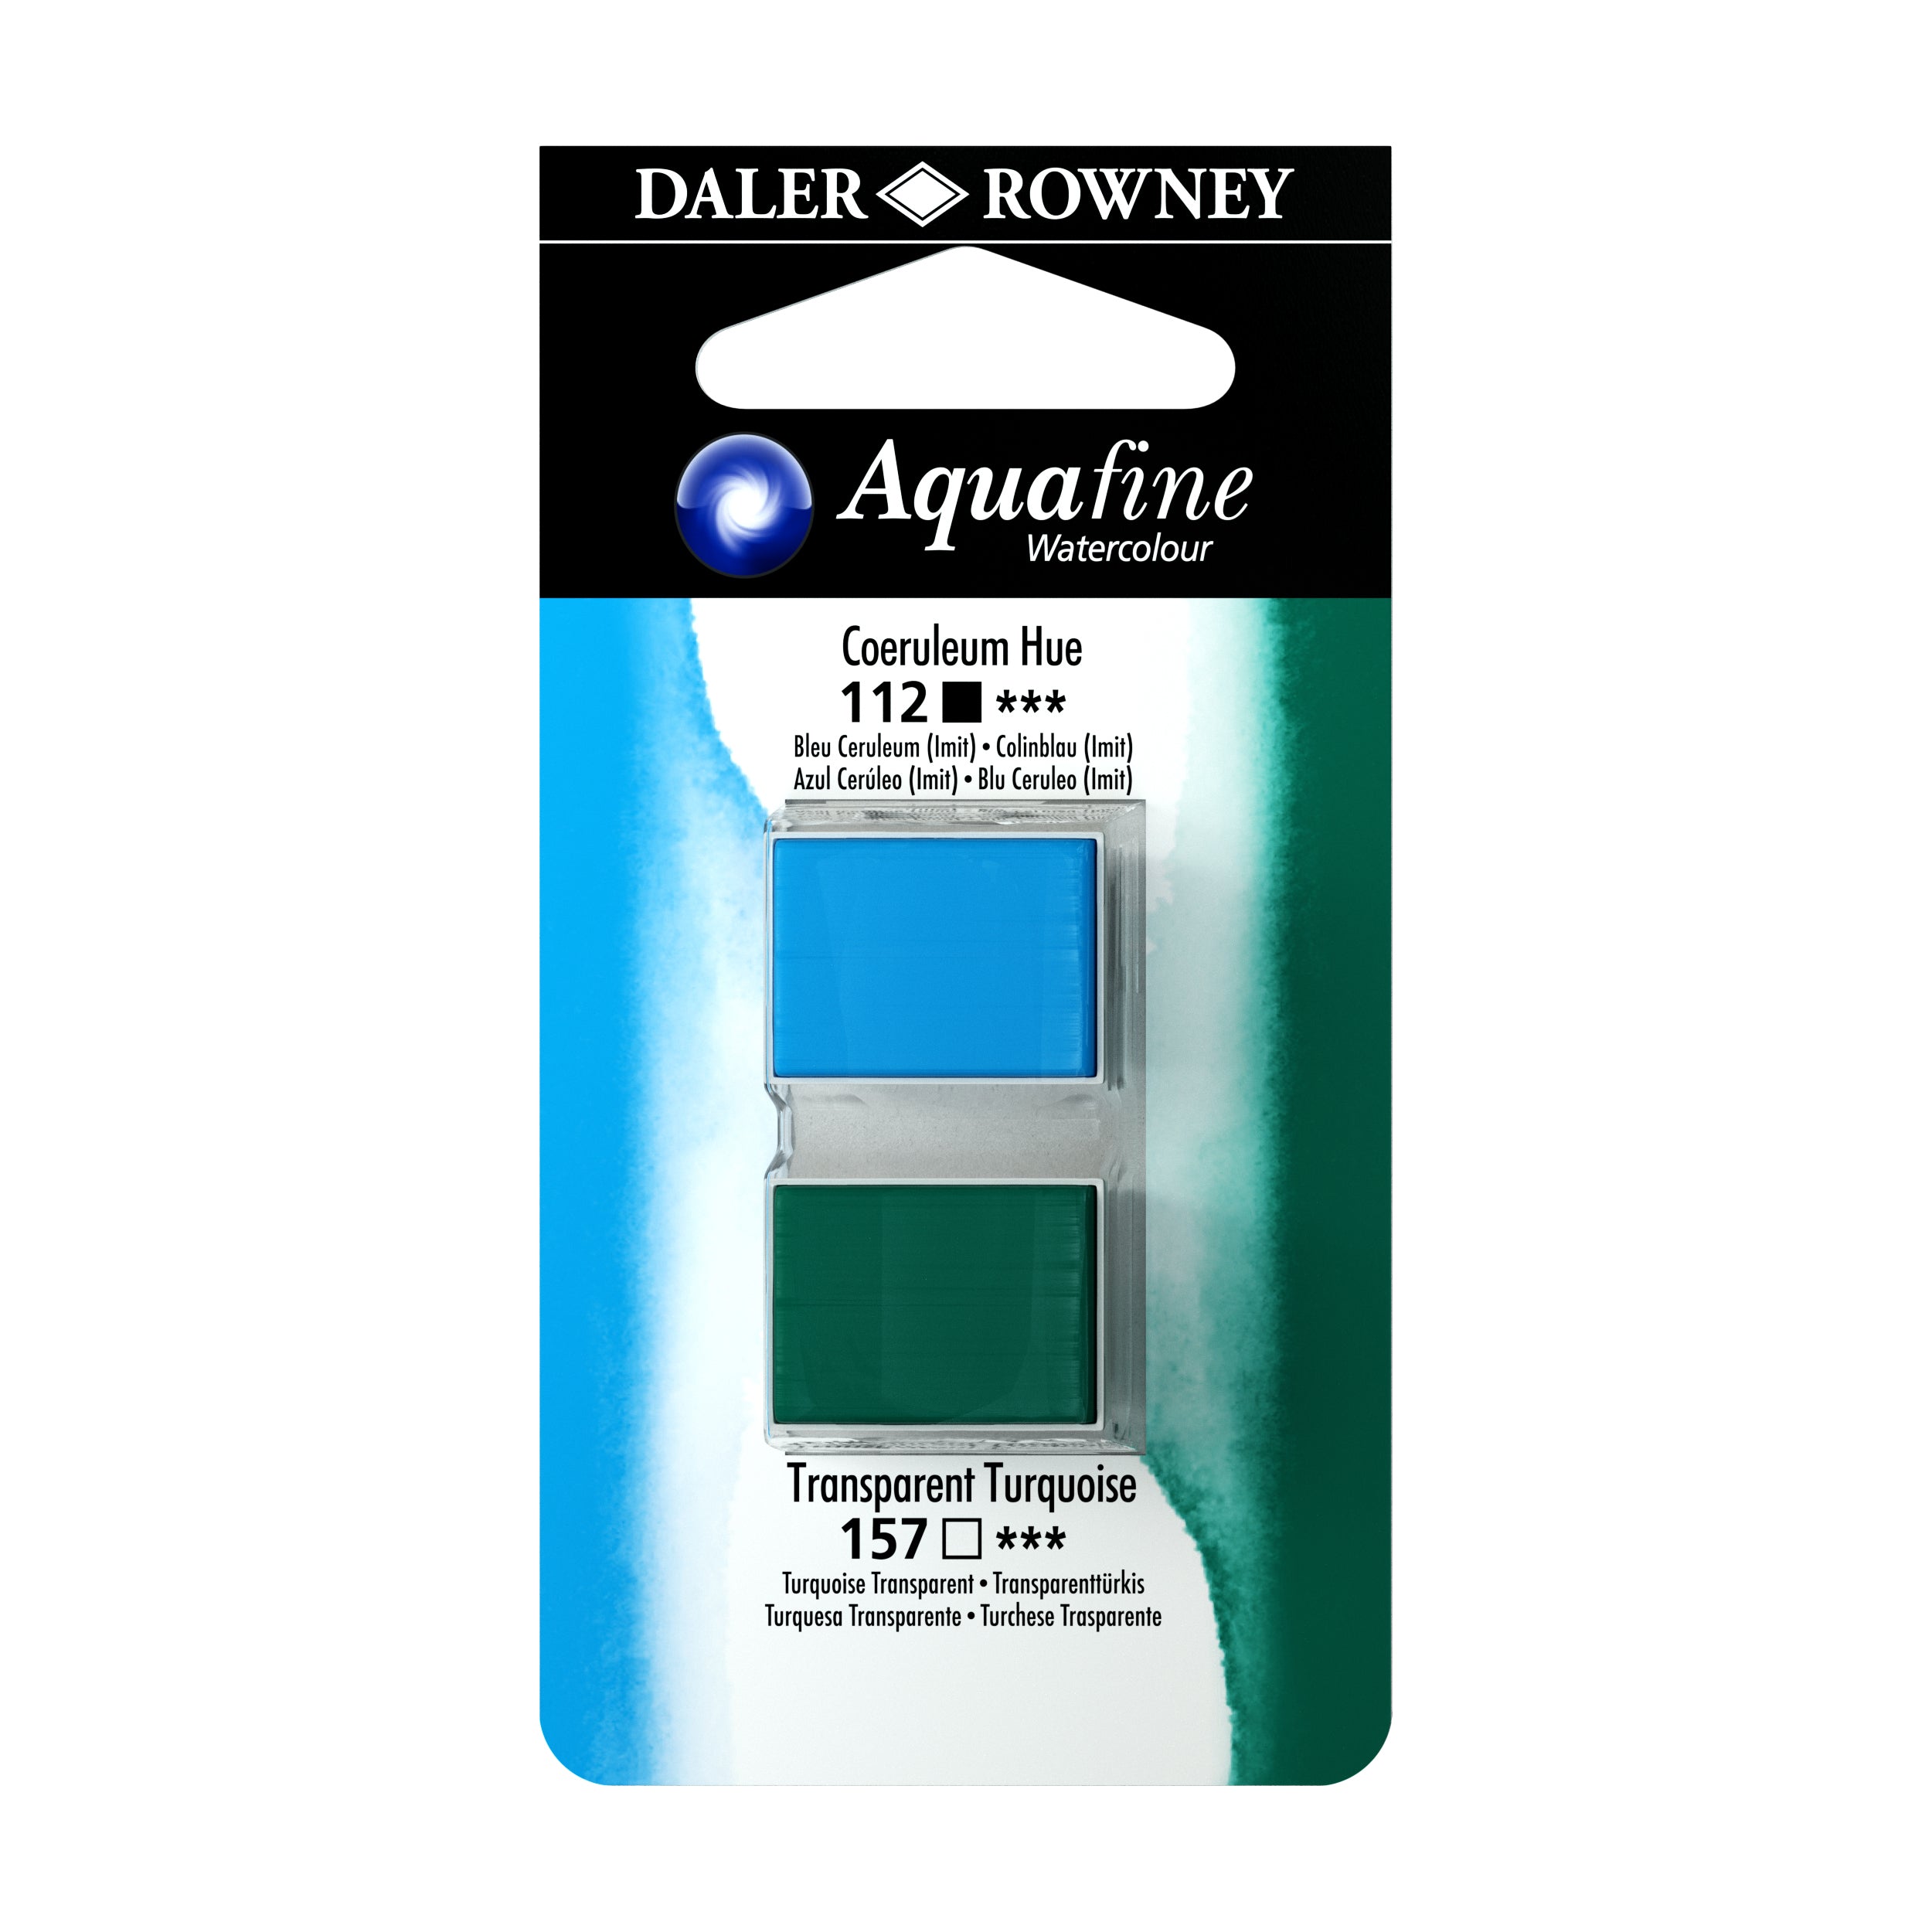  Daler-Rowney Aquafine Watercolor Ink Cobalt Blue Hue